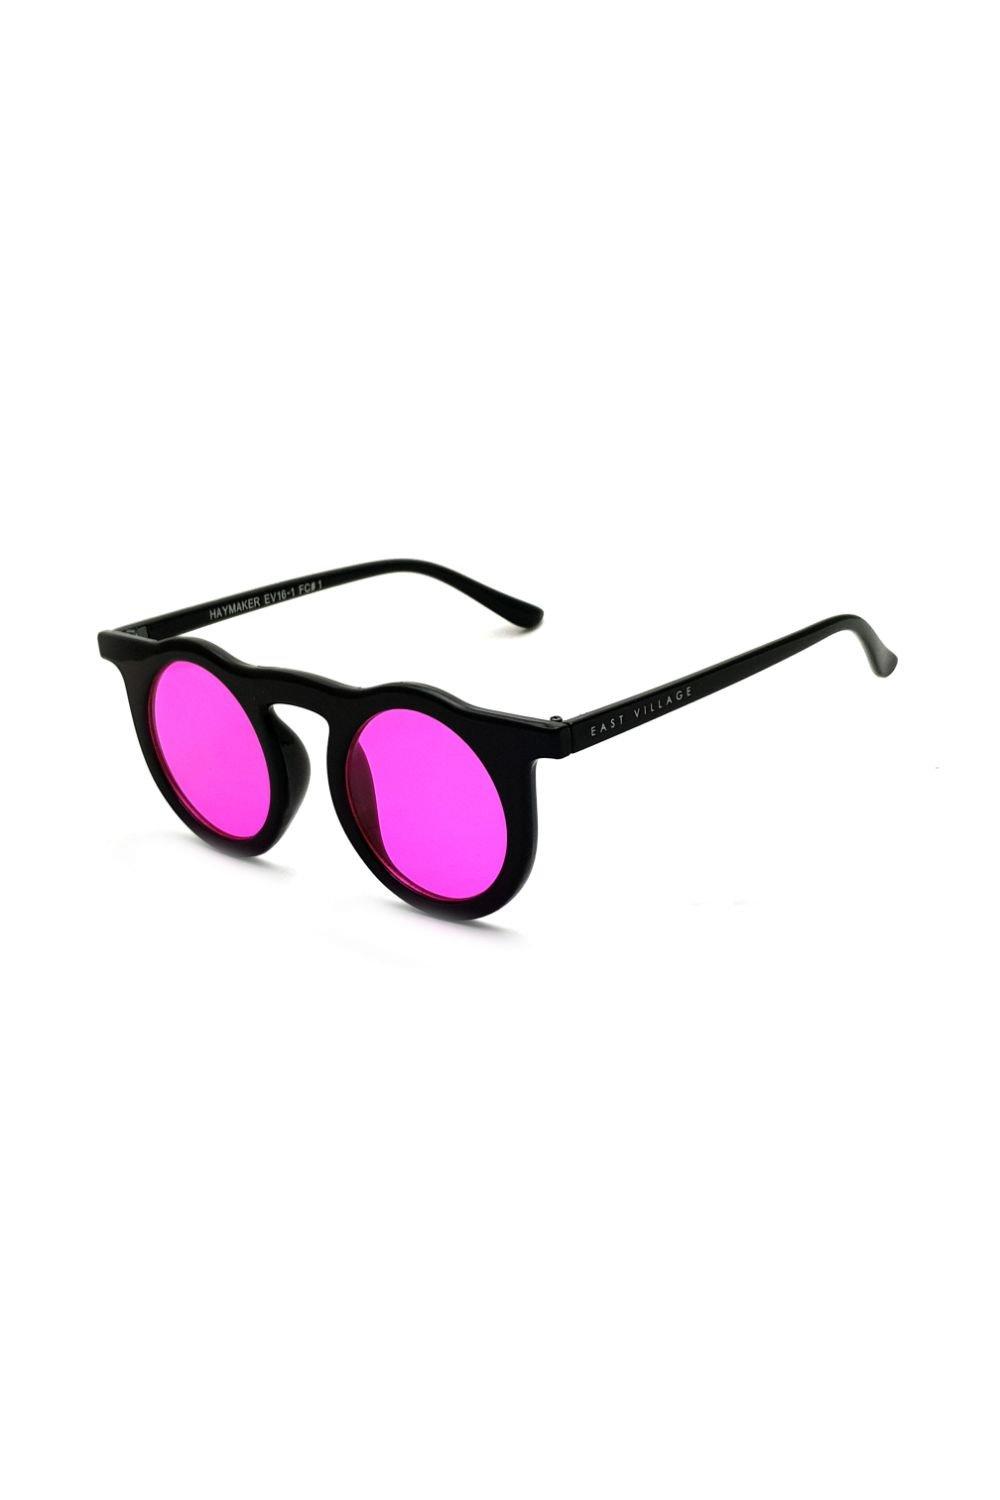 круглые солнцезащитные очки journeyman east village серебро Круглые солнцезащитные очки Haymaker East Village, черный